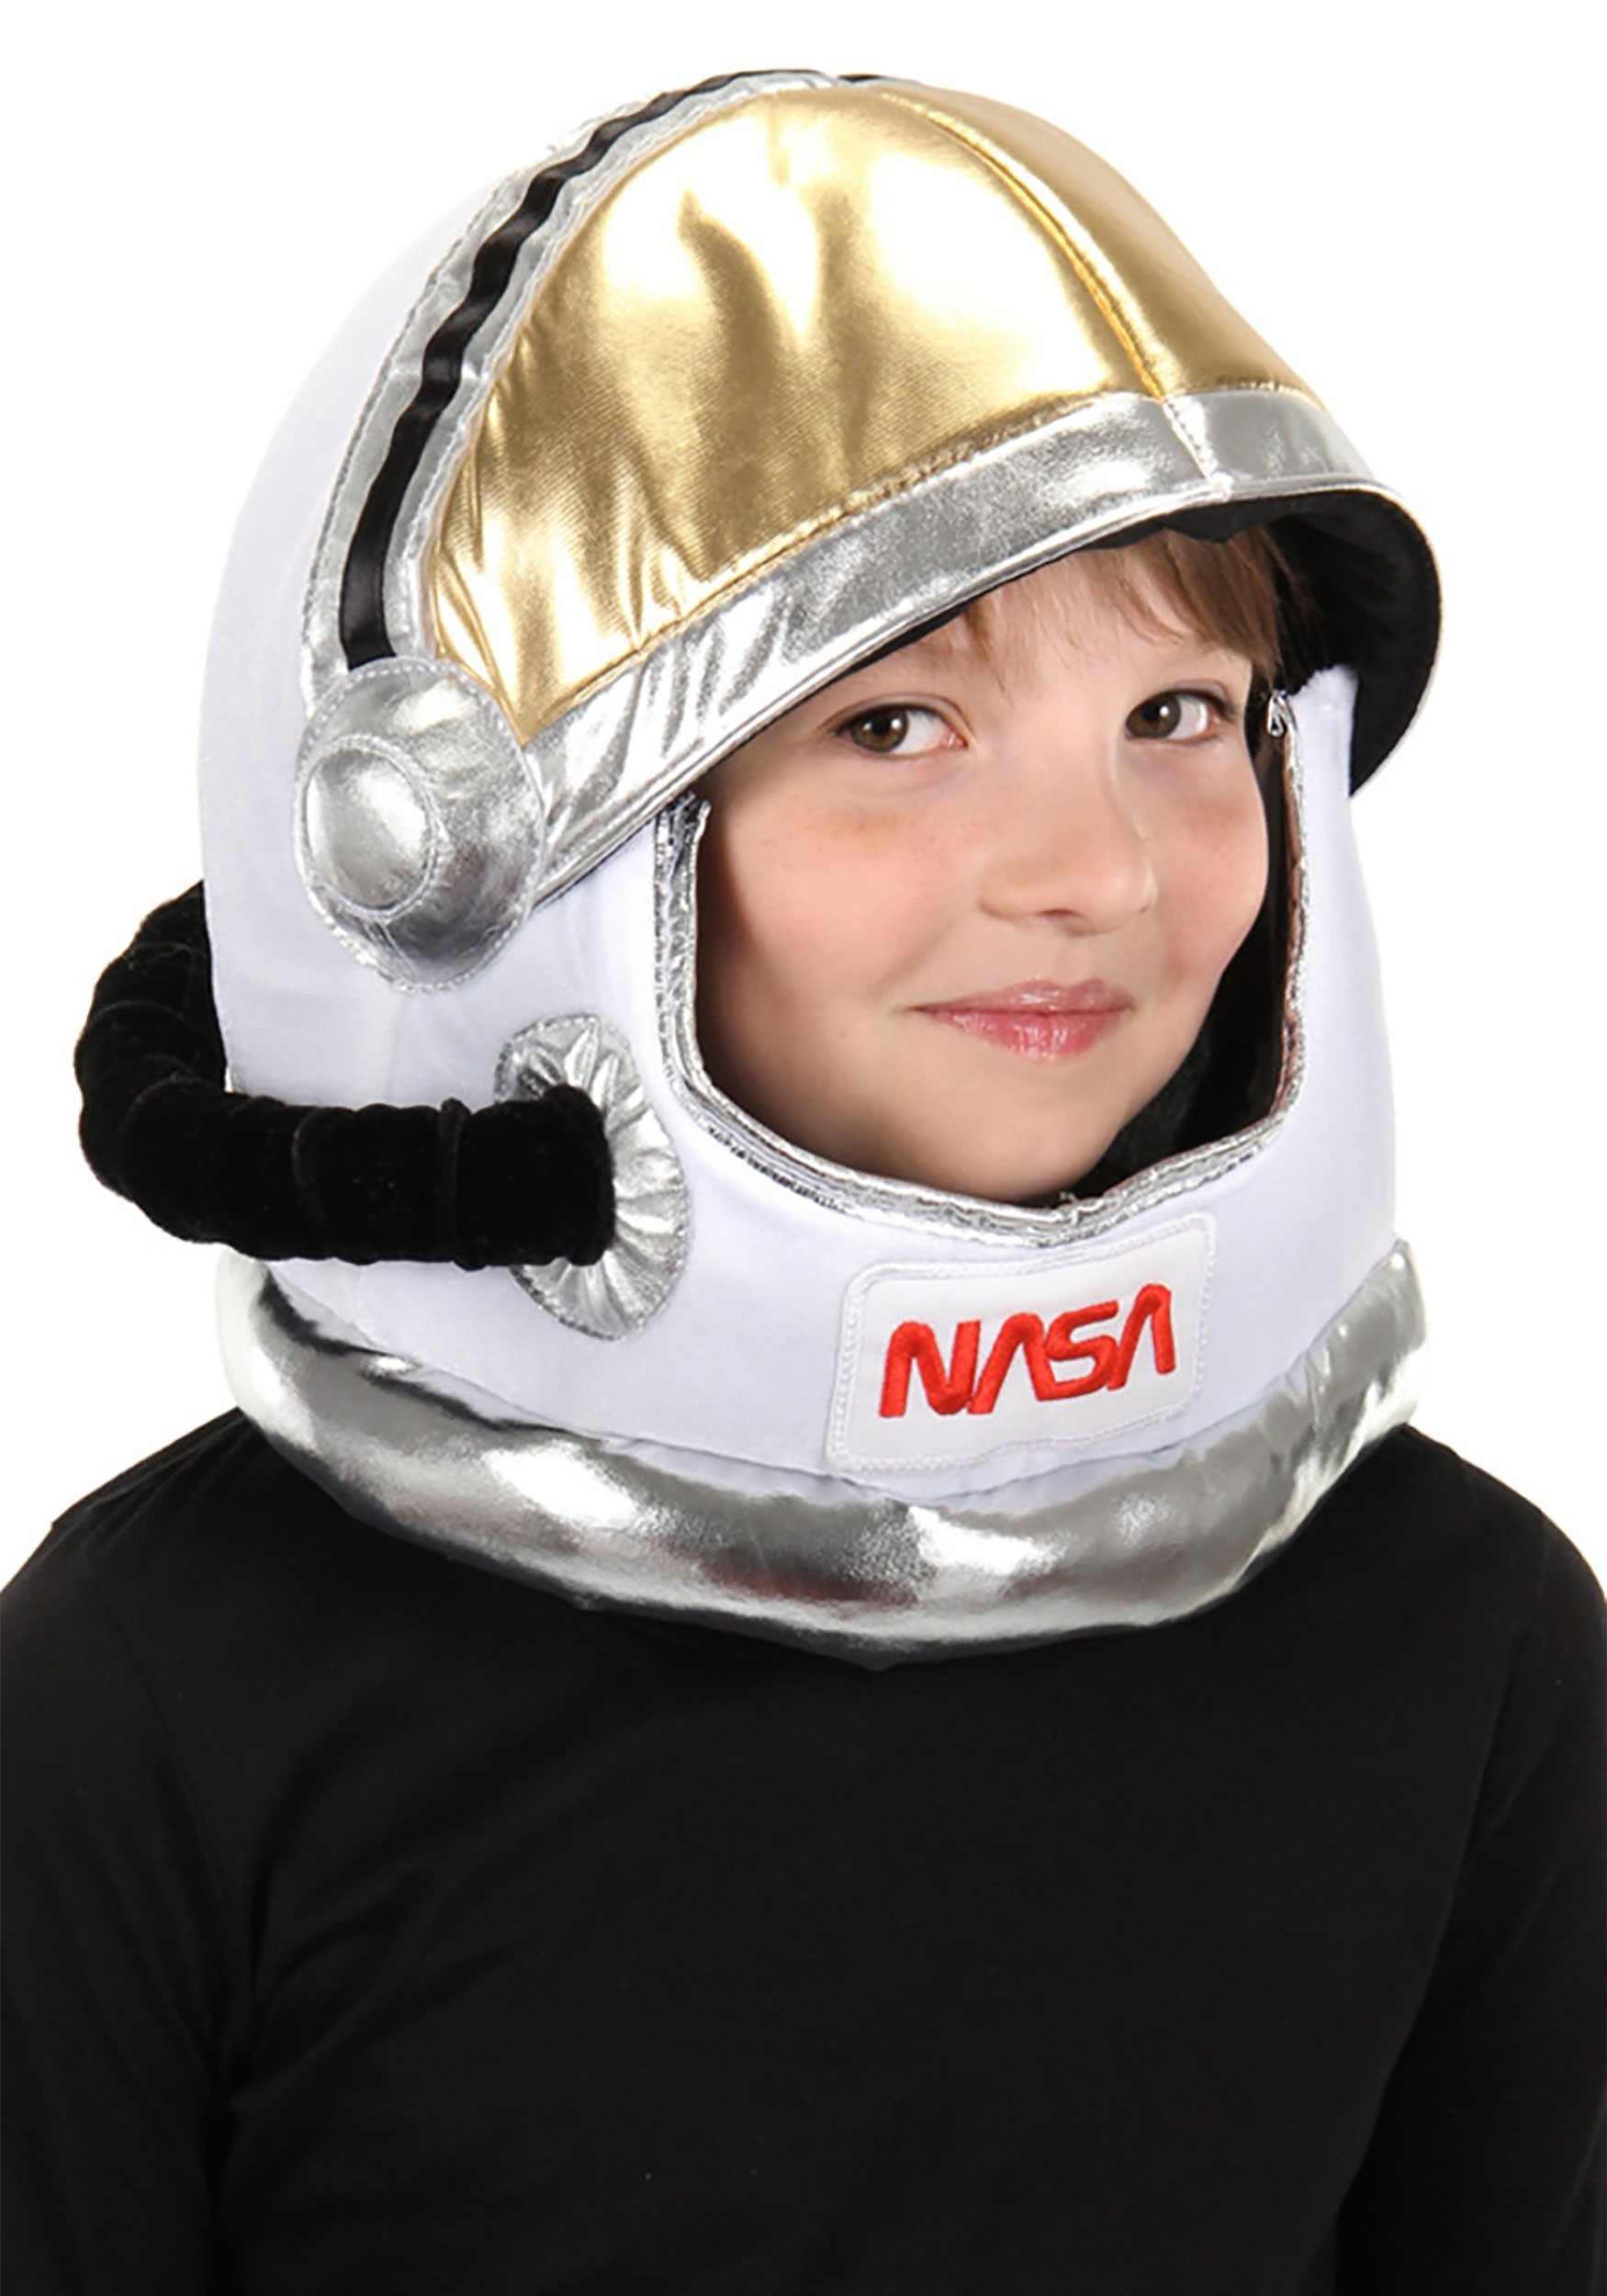 Space Plush Costume Helmet For Kids